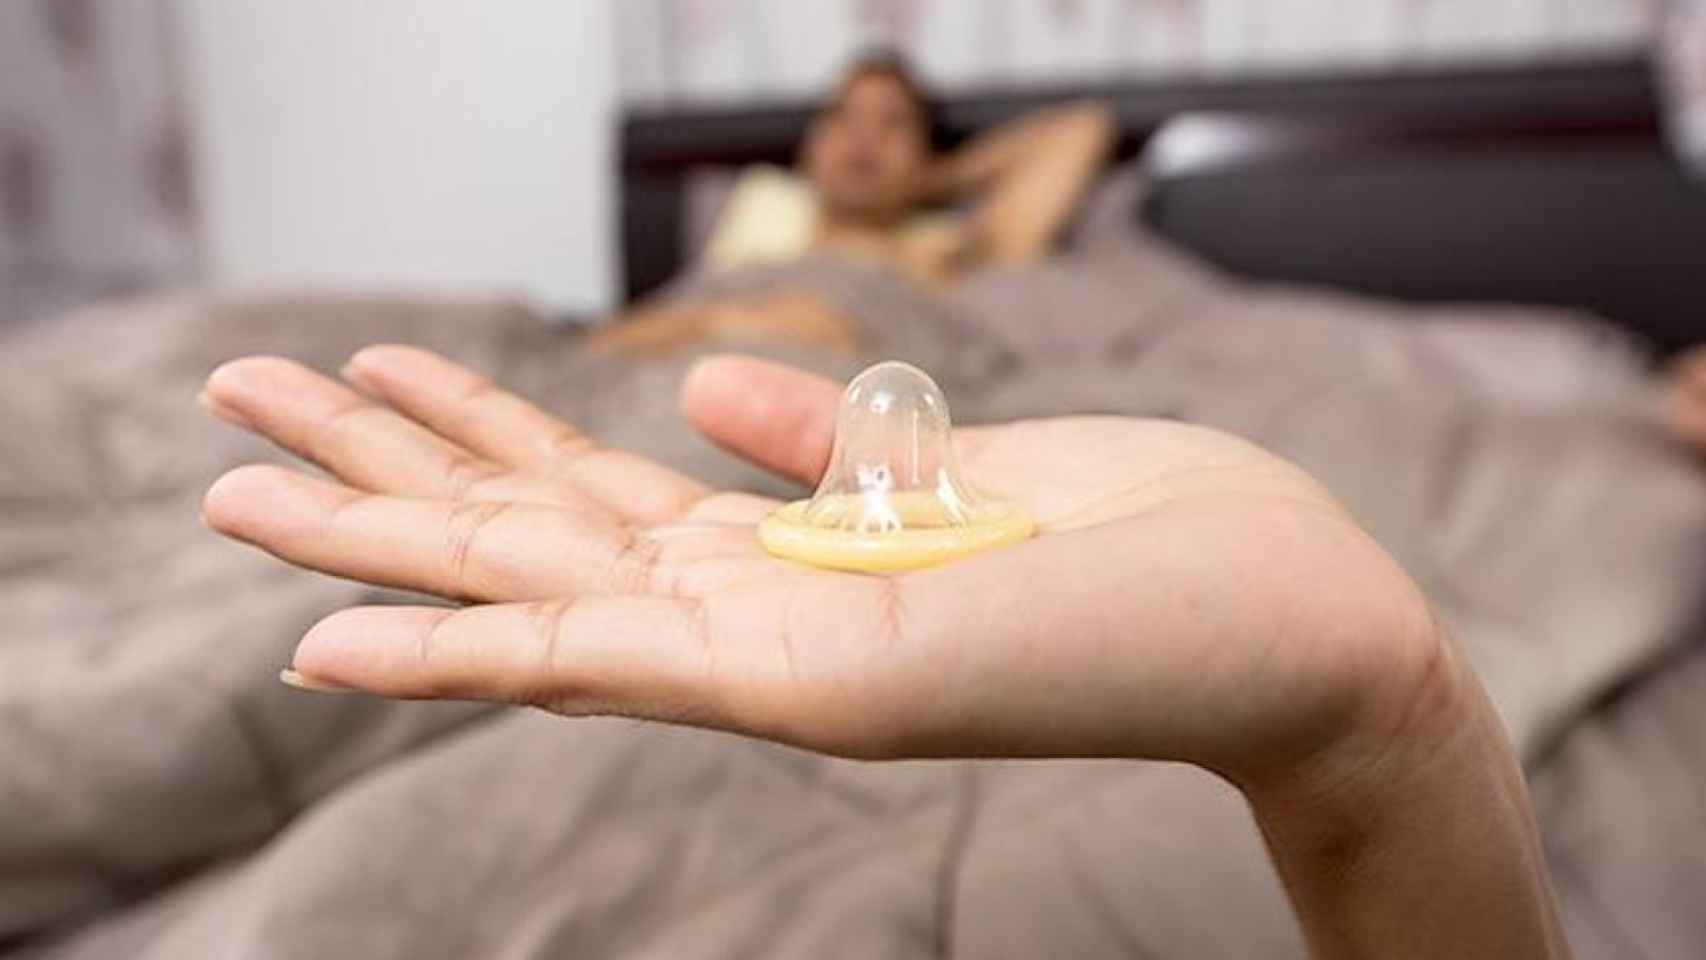 Preservativo, el método anticonceptivo más común, en la mano de una mujer / EP